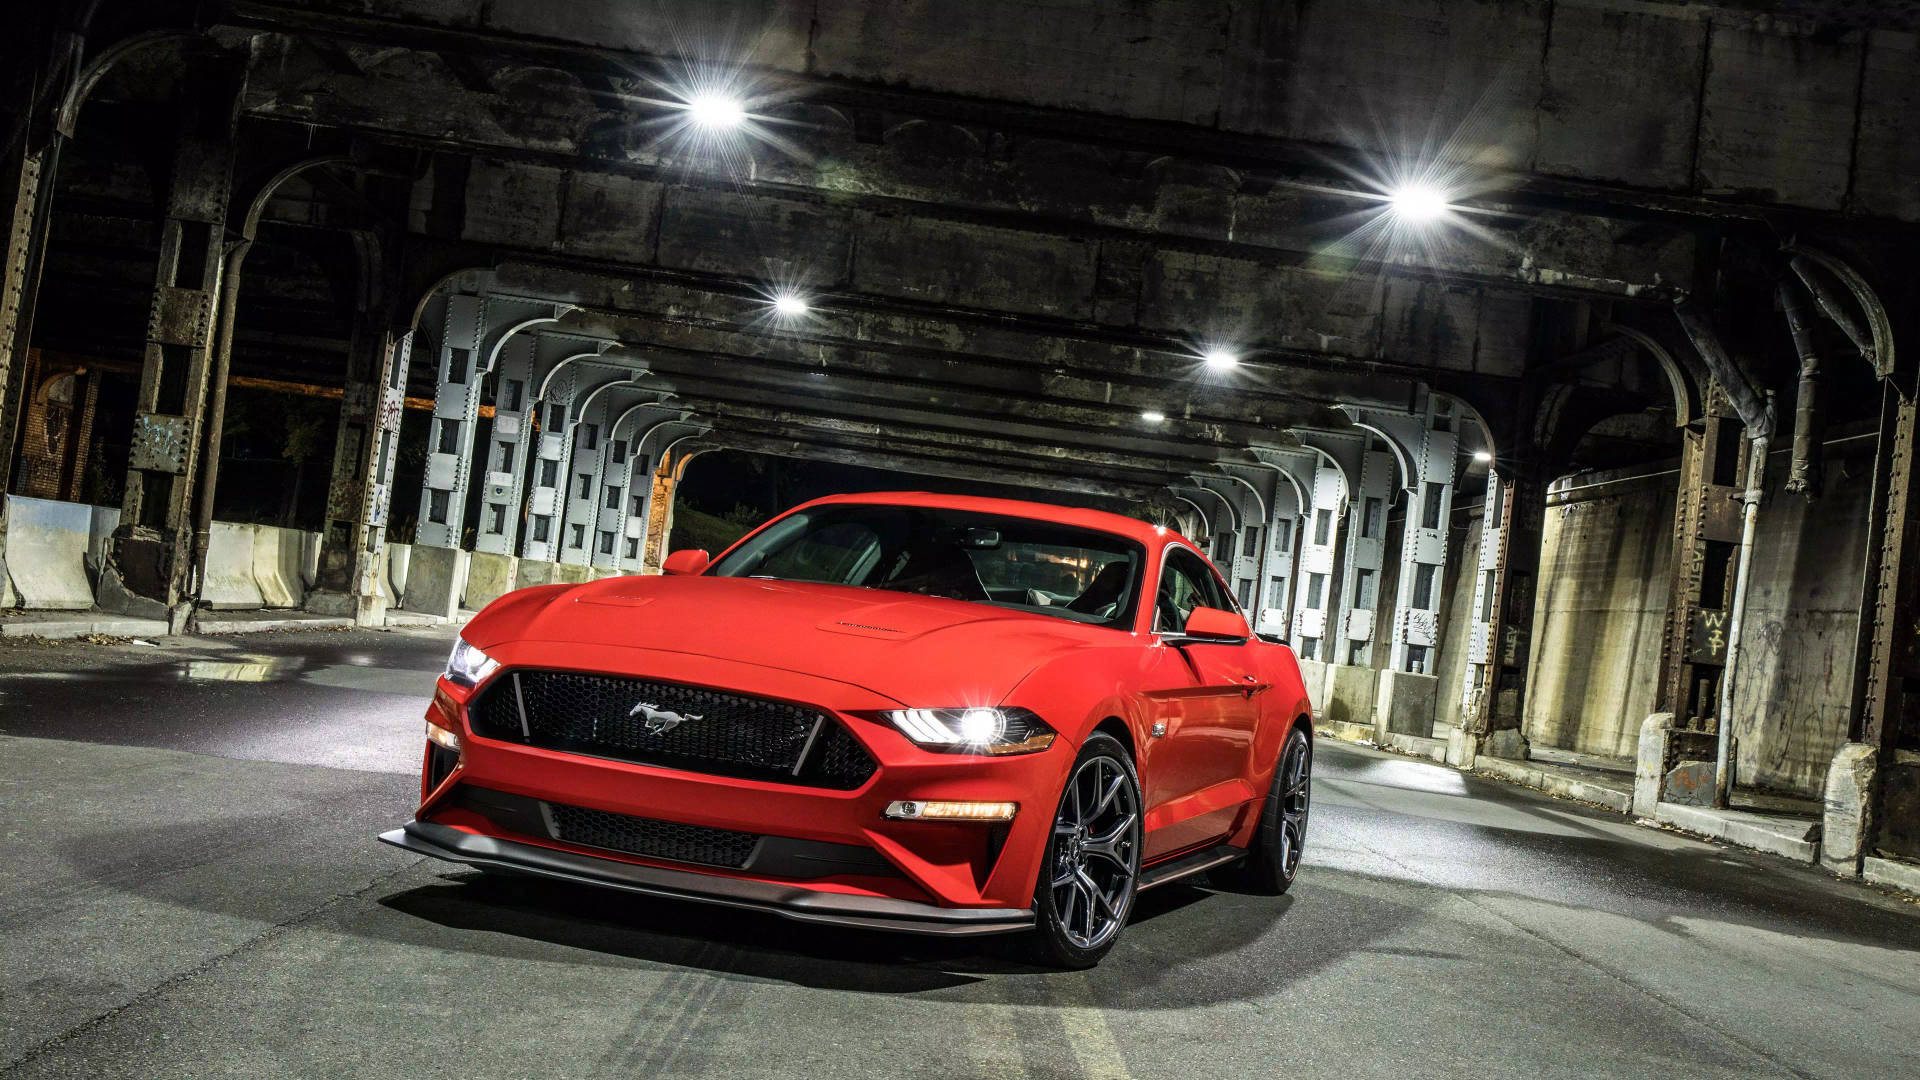 Cruis i stil i et cool Mustang Wallpaper